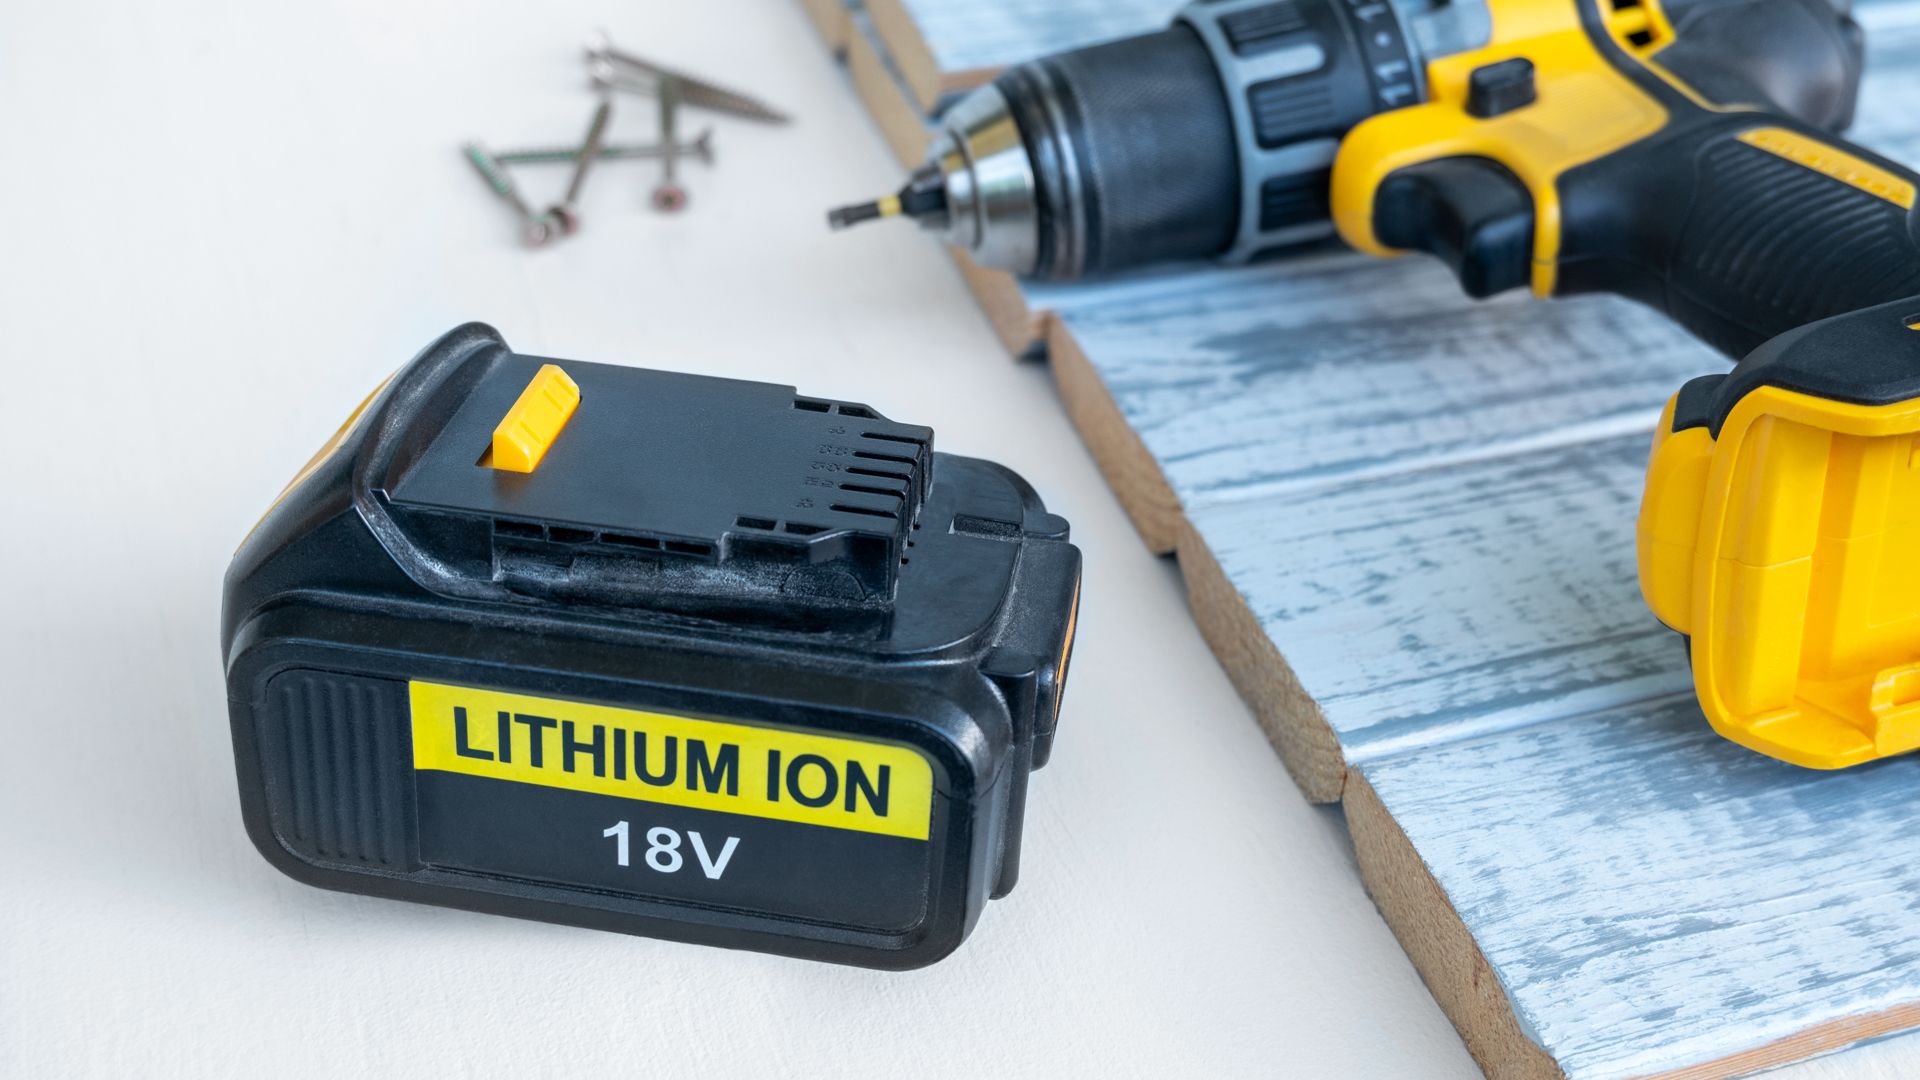 18V Li-ion power tool battery pack.